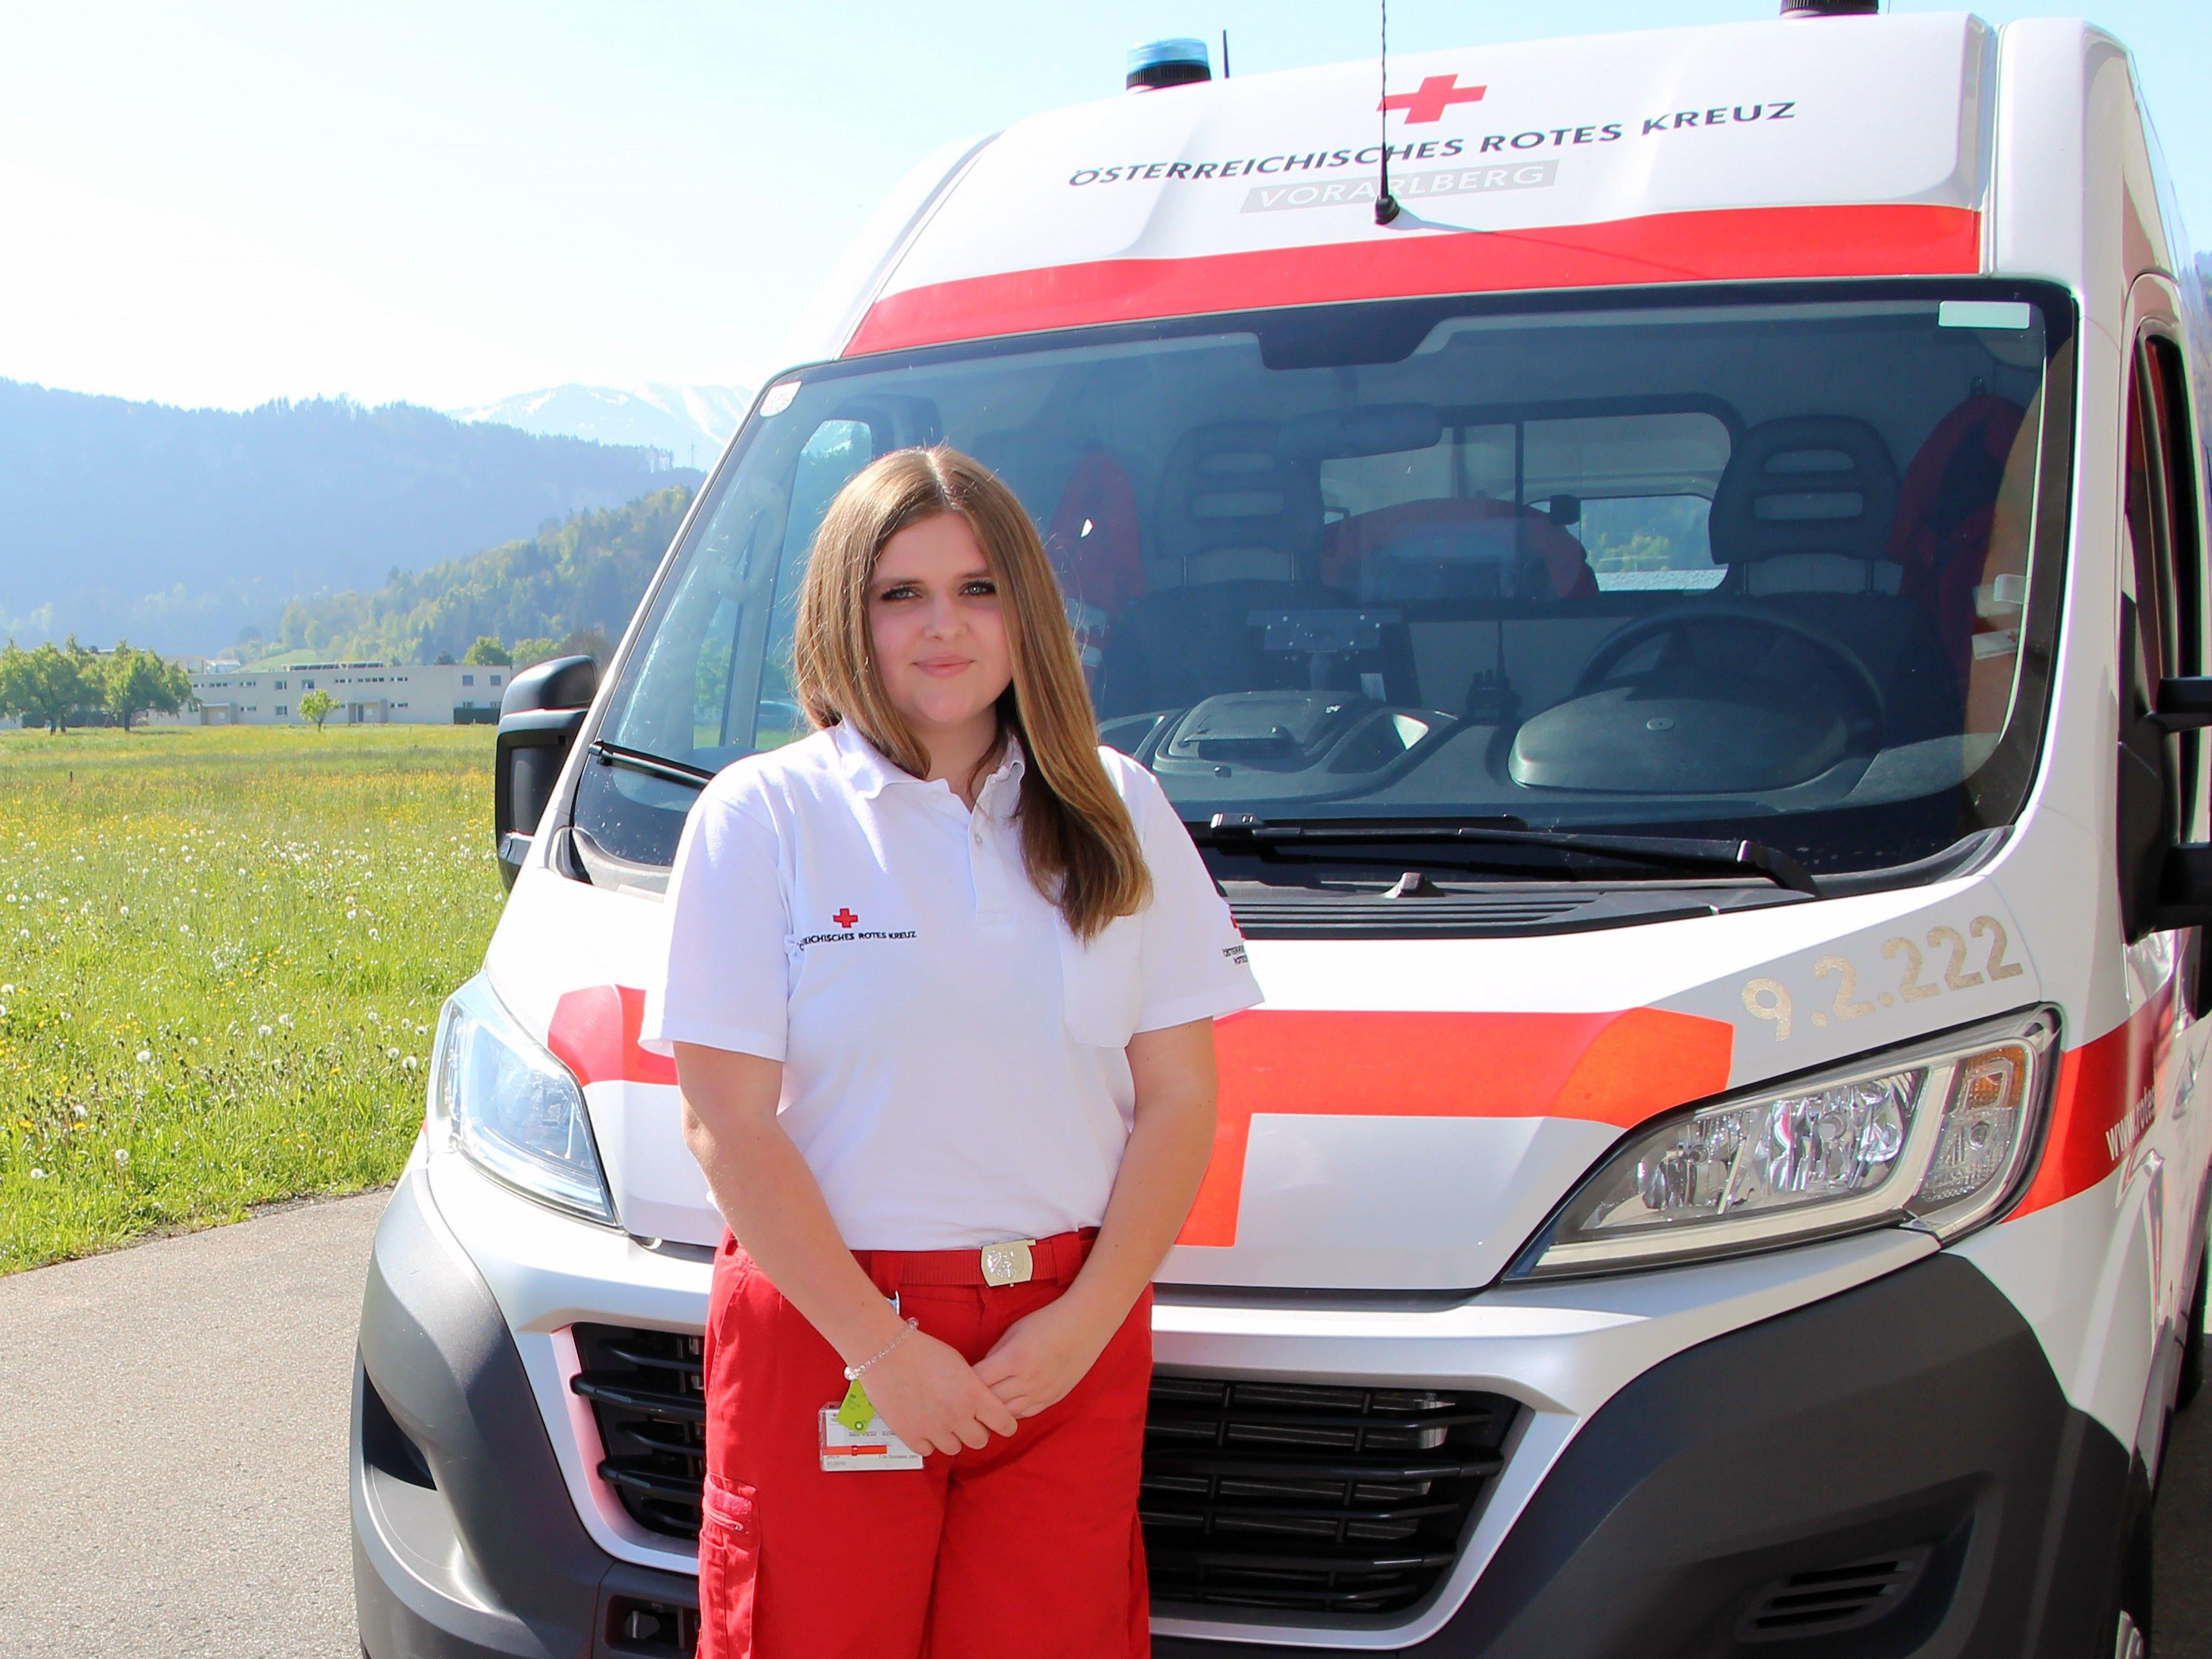 Sarah Rigo absolviert derzeit ihr Freiwilliges Sozialjahr in der Rotkreuz-Abteilung Feldkirch.